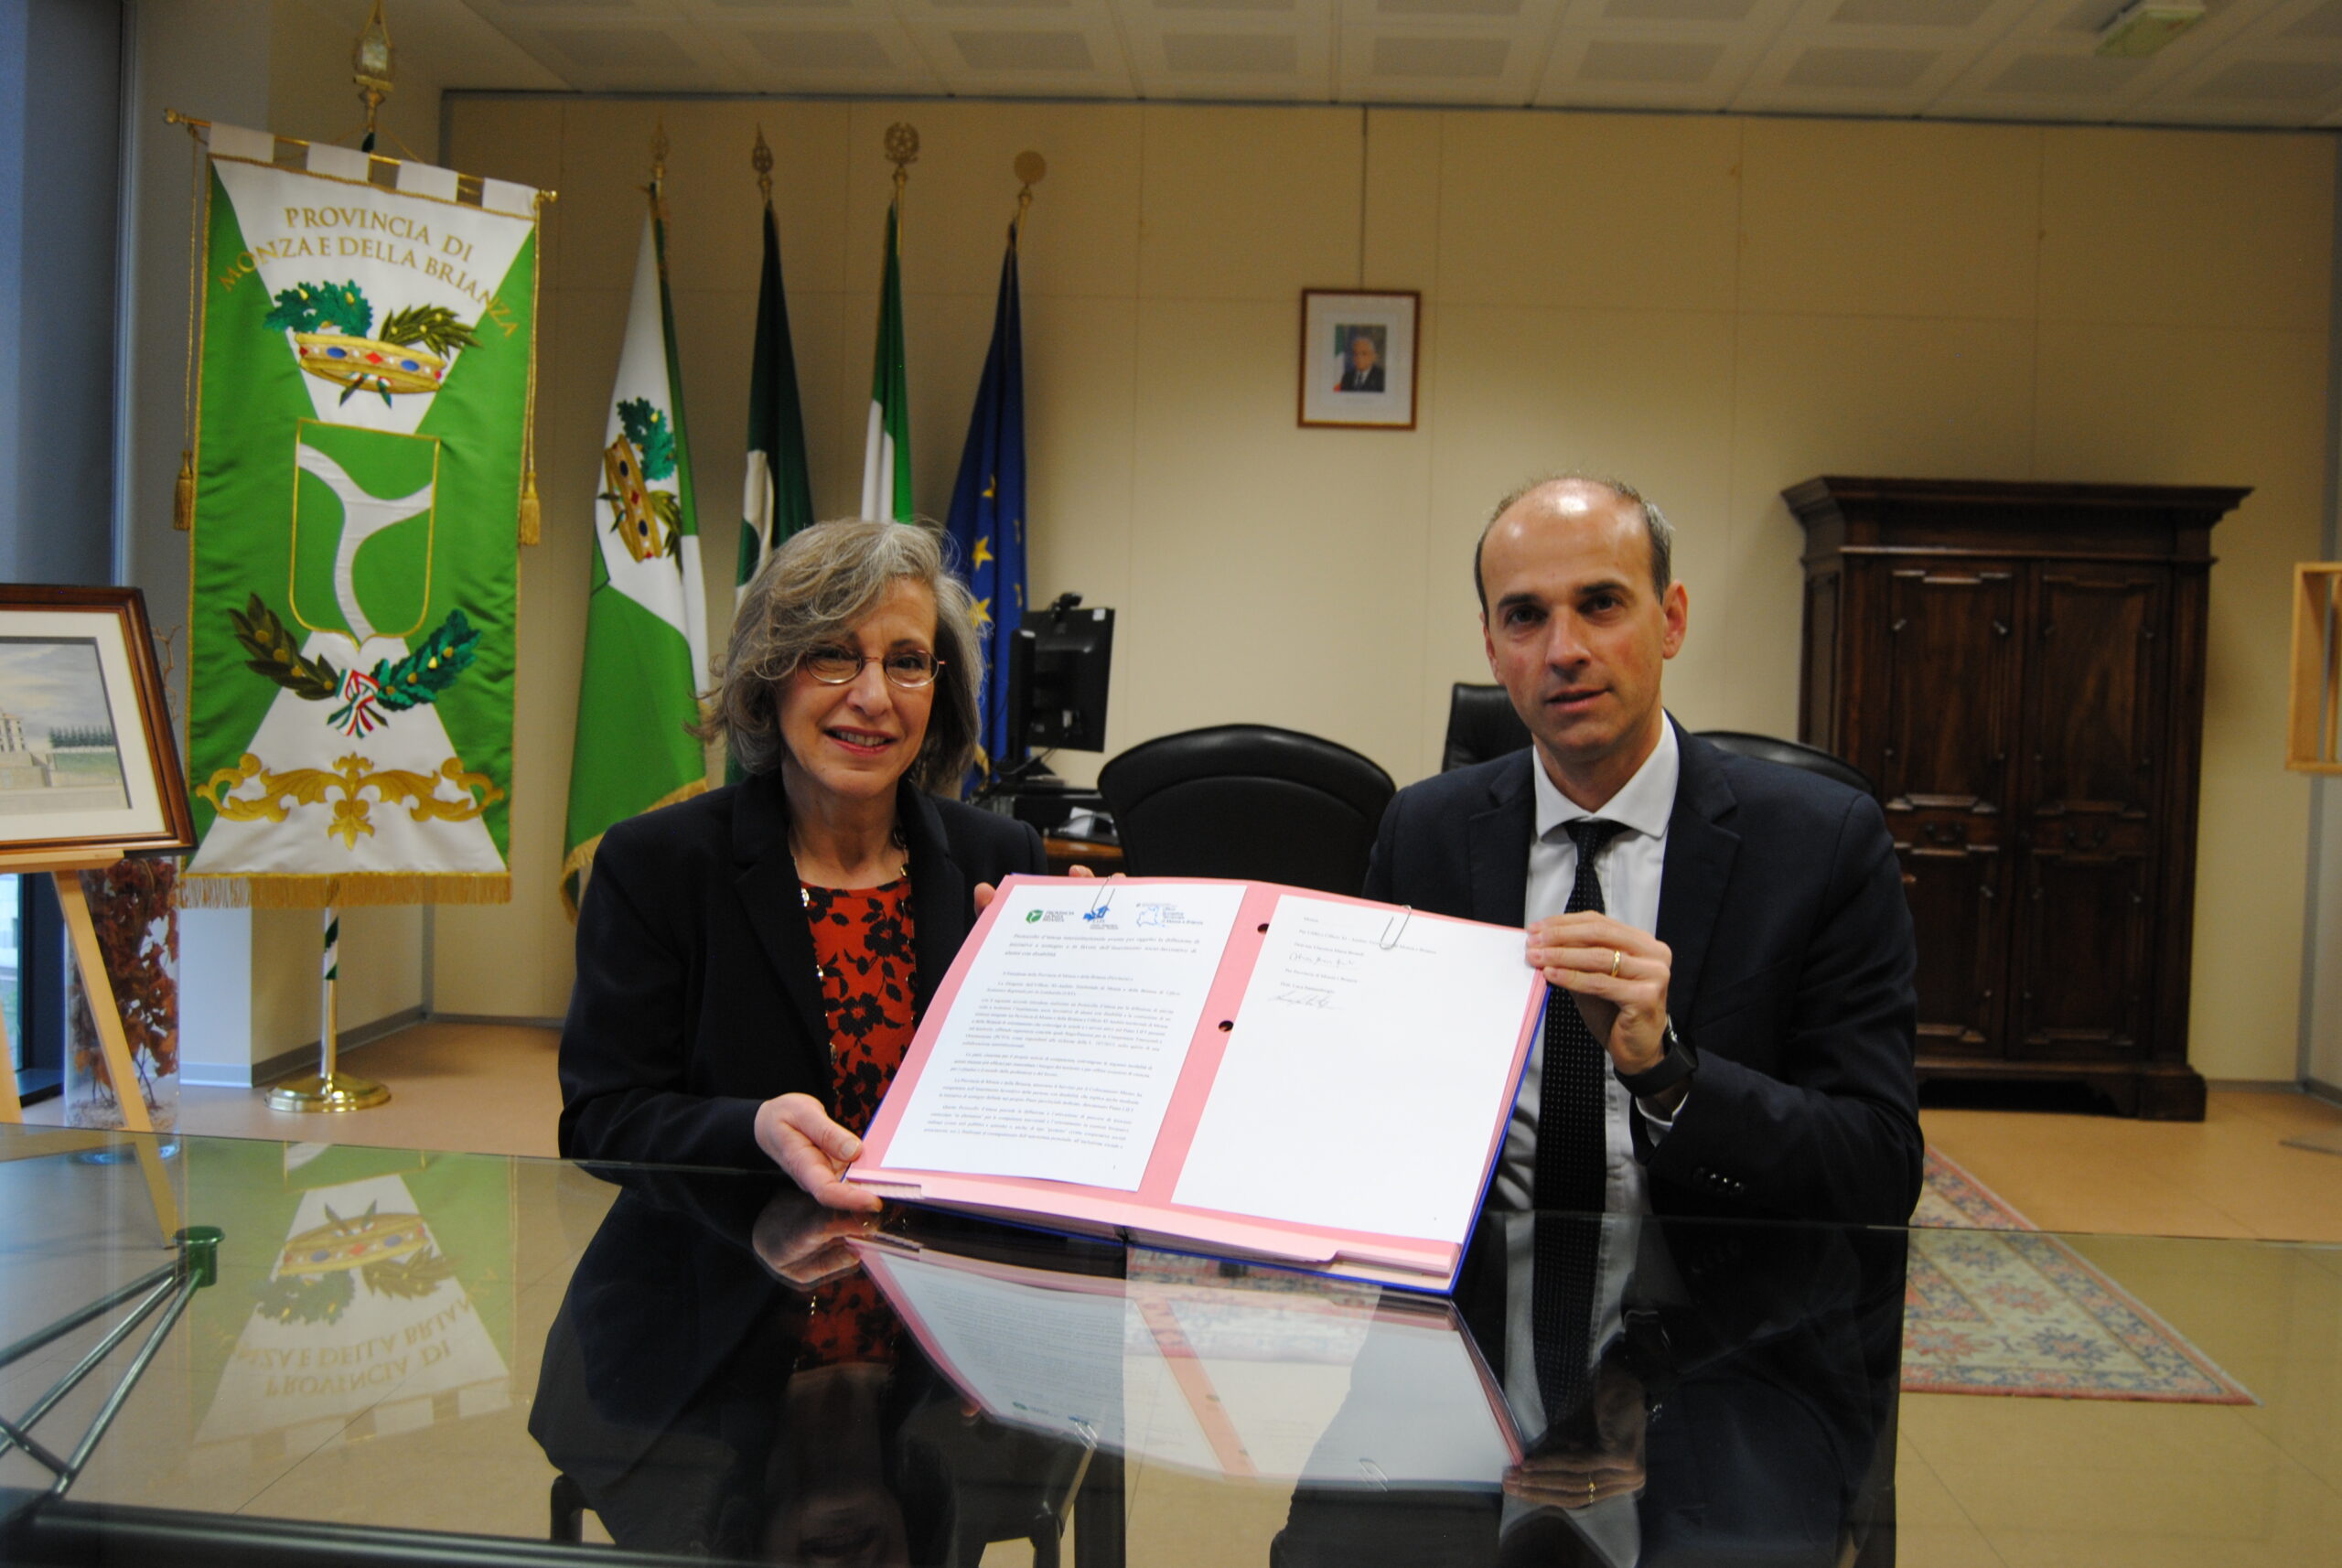 La firma del protocollo di intesa tra Ufficio scolastico e Provincia di Monza e Brianza